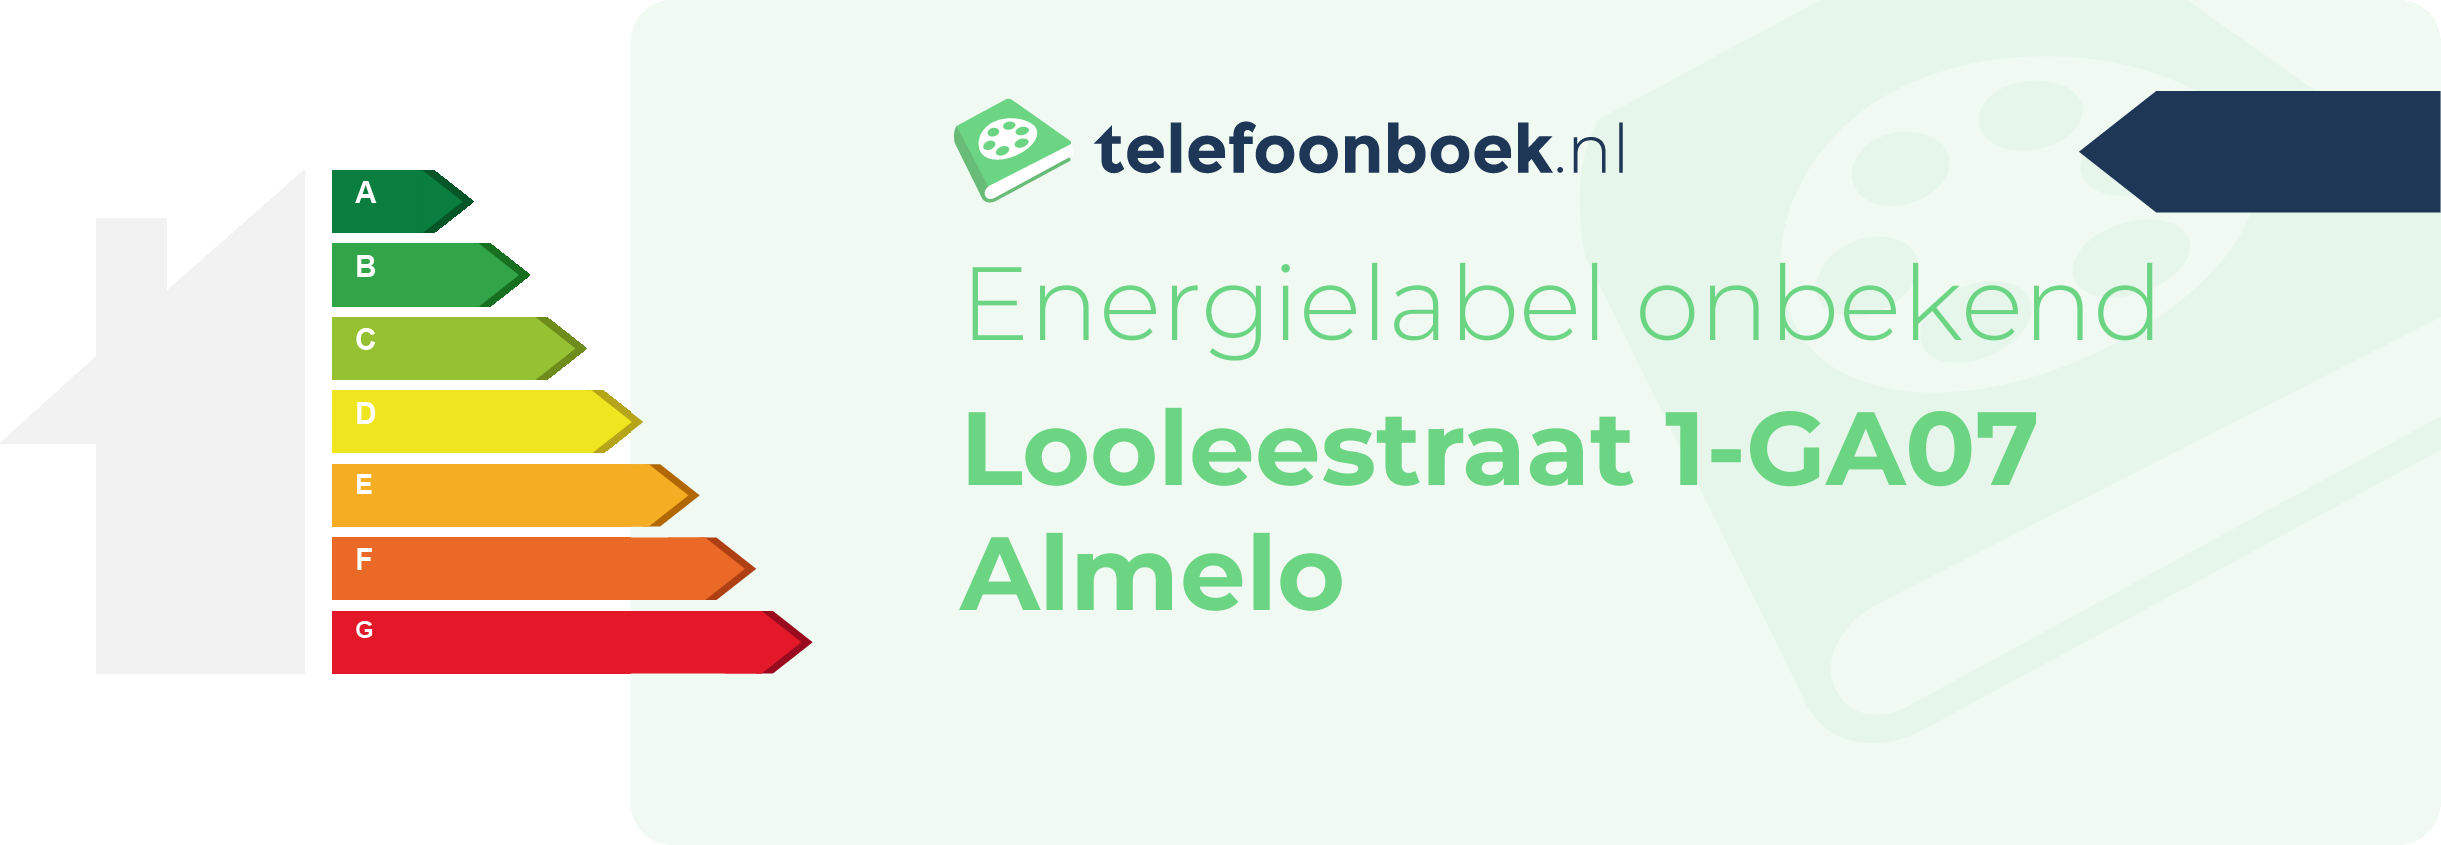 Energielabel Looleestraat 1-GA07 Almelo